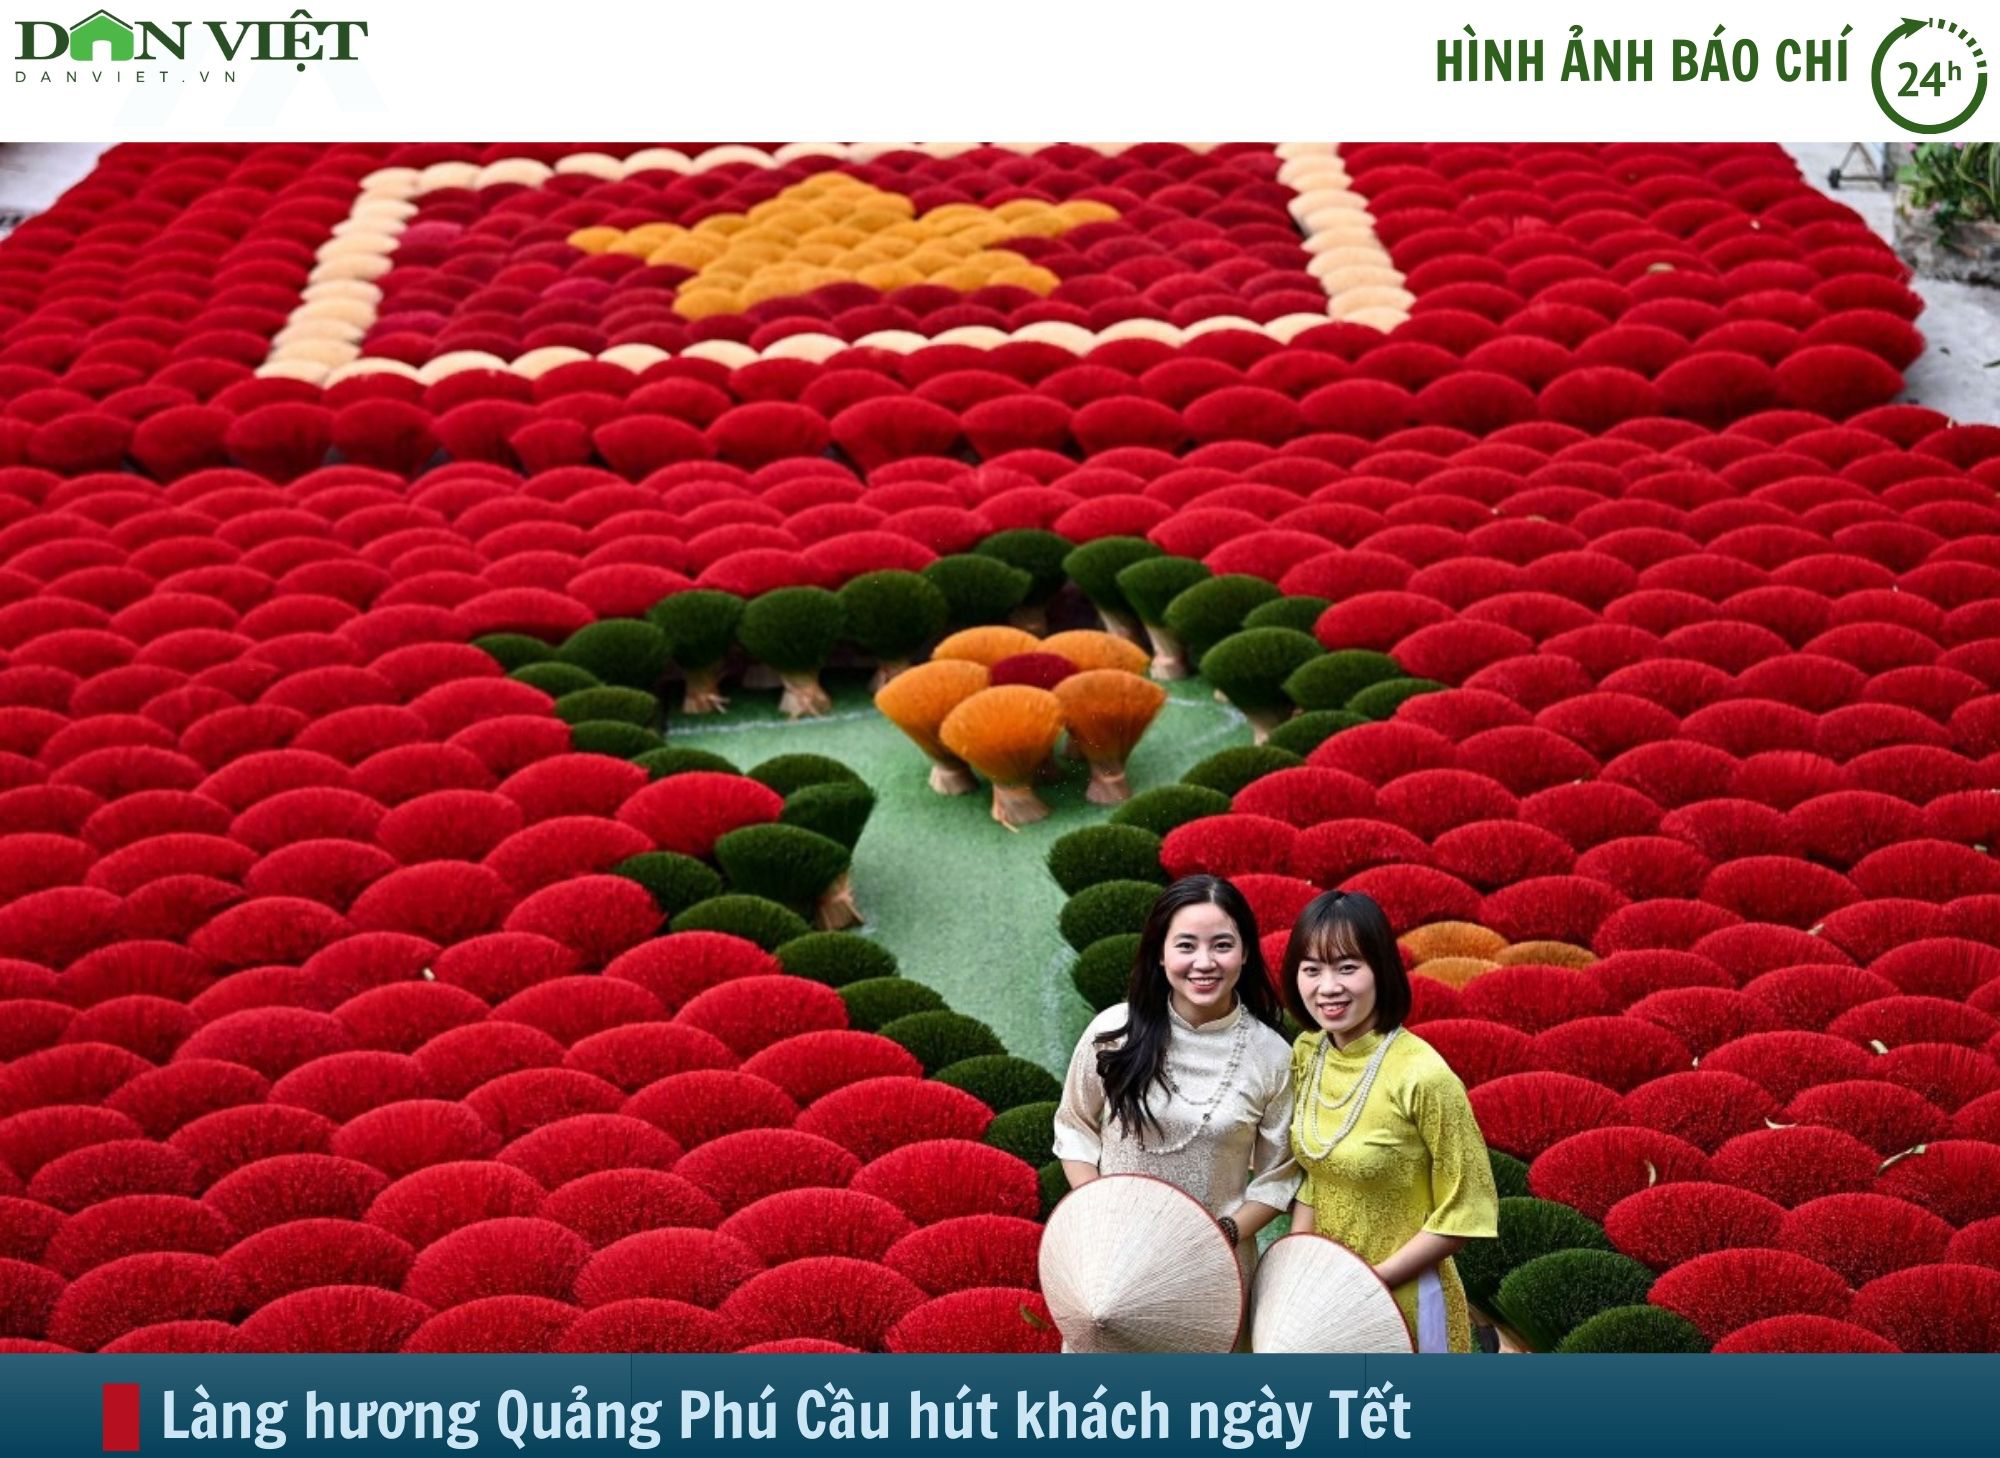 Hình ảnh báo chí 24h: Làng hương Quảng Phú Cầu tuyệt đẹp ngày Tết- Ảnh 1.